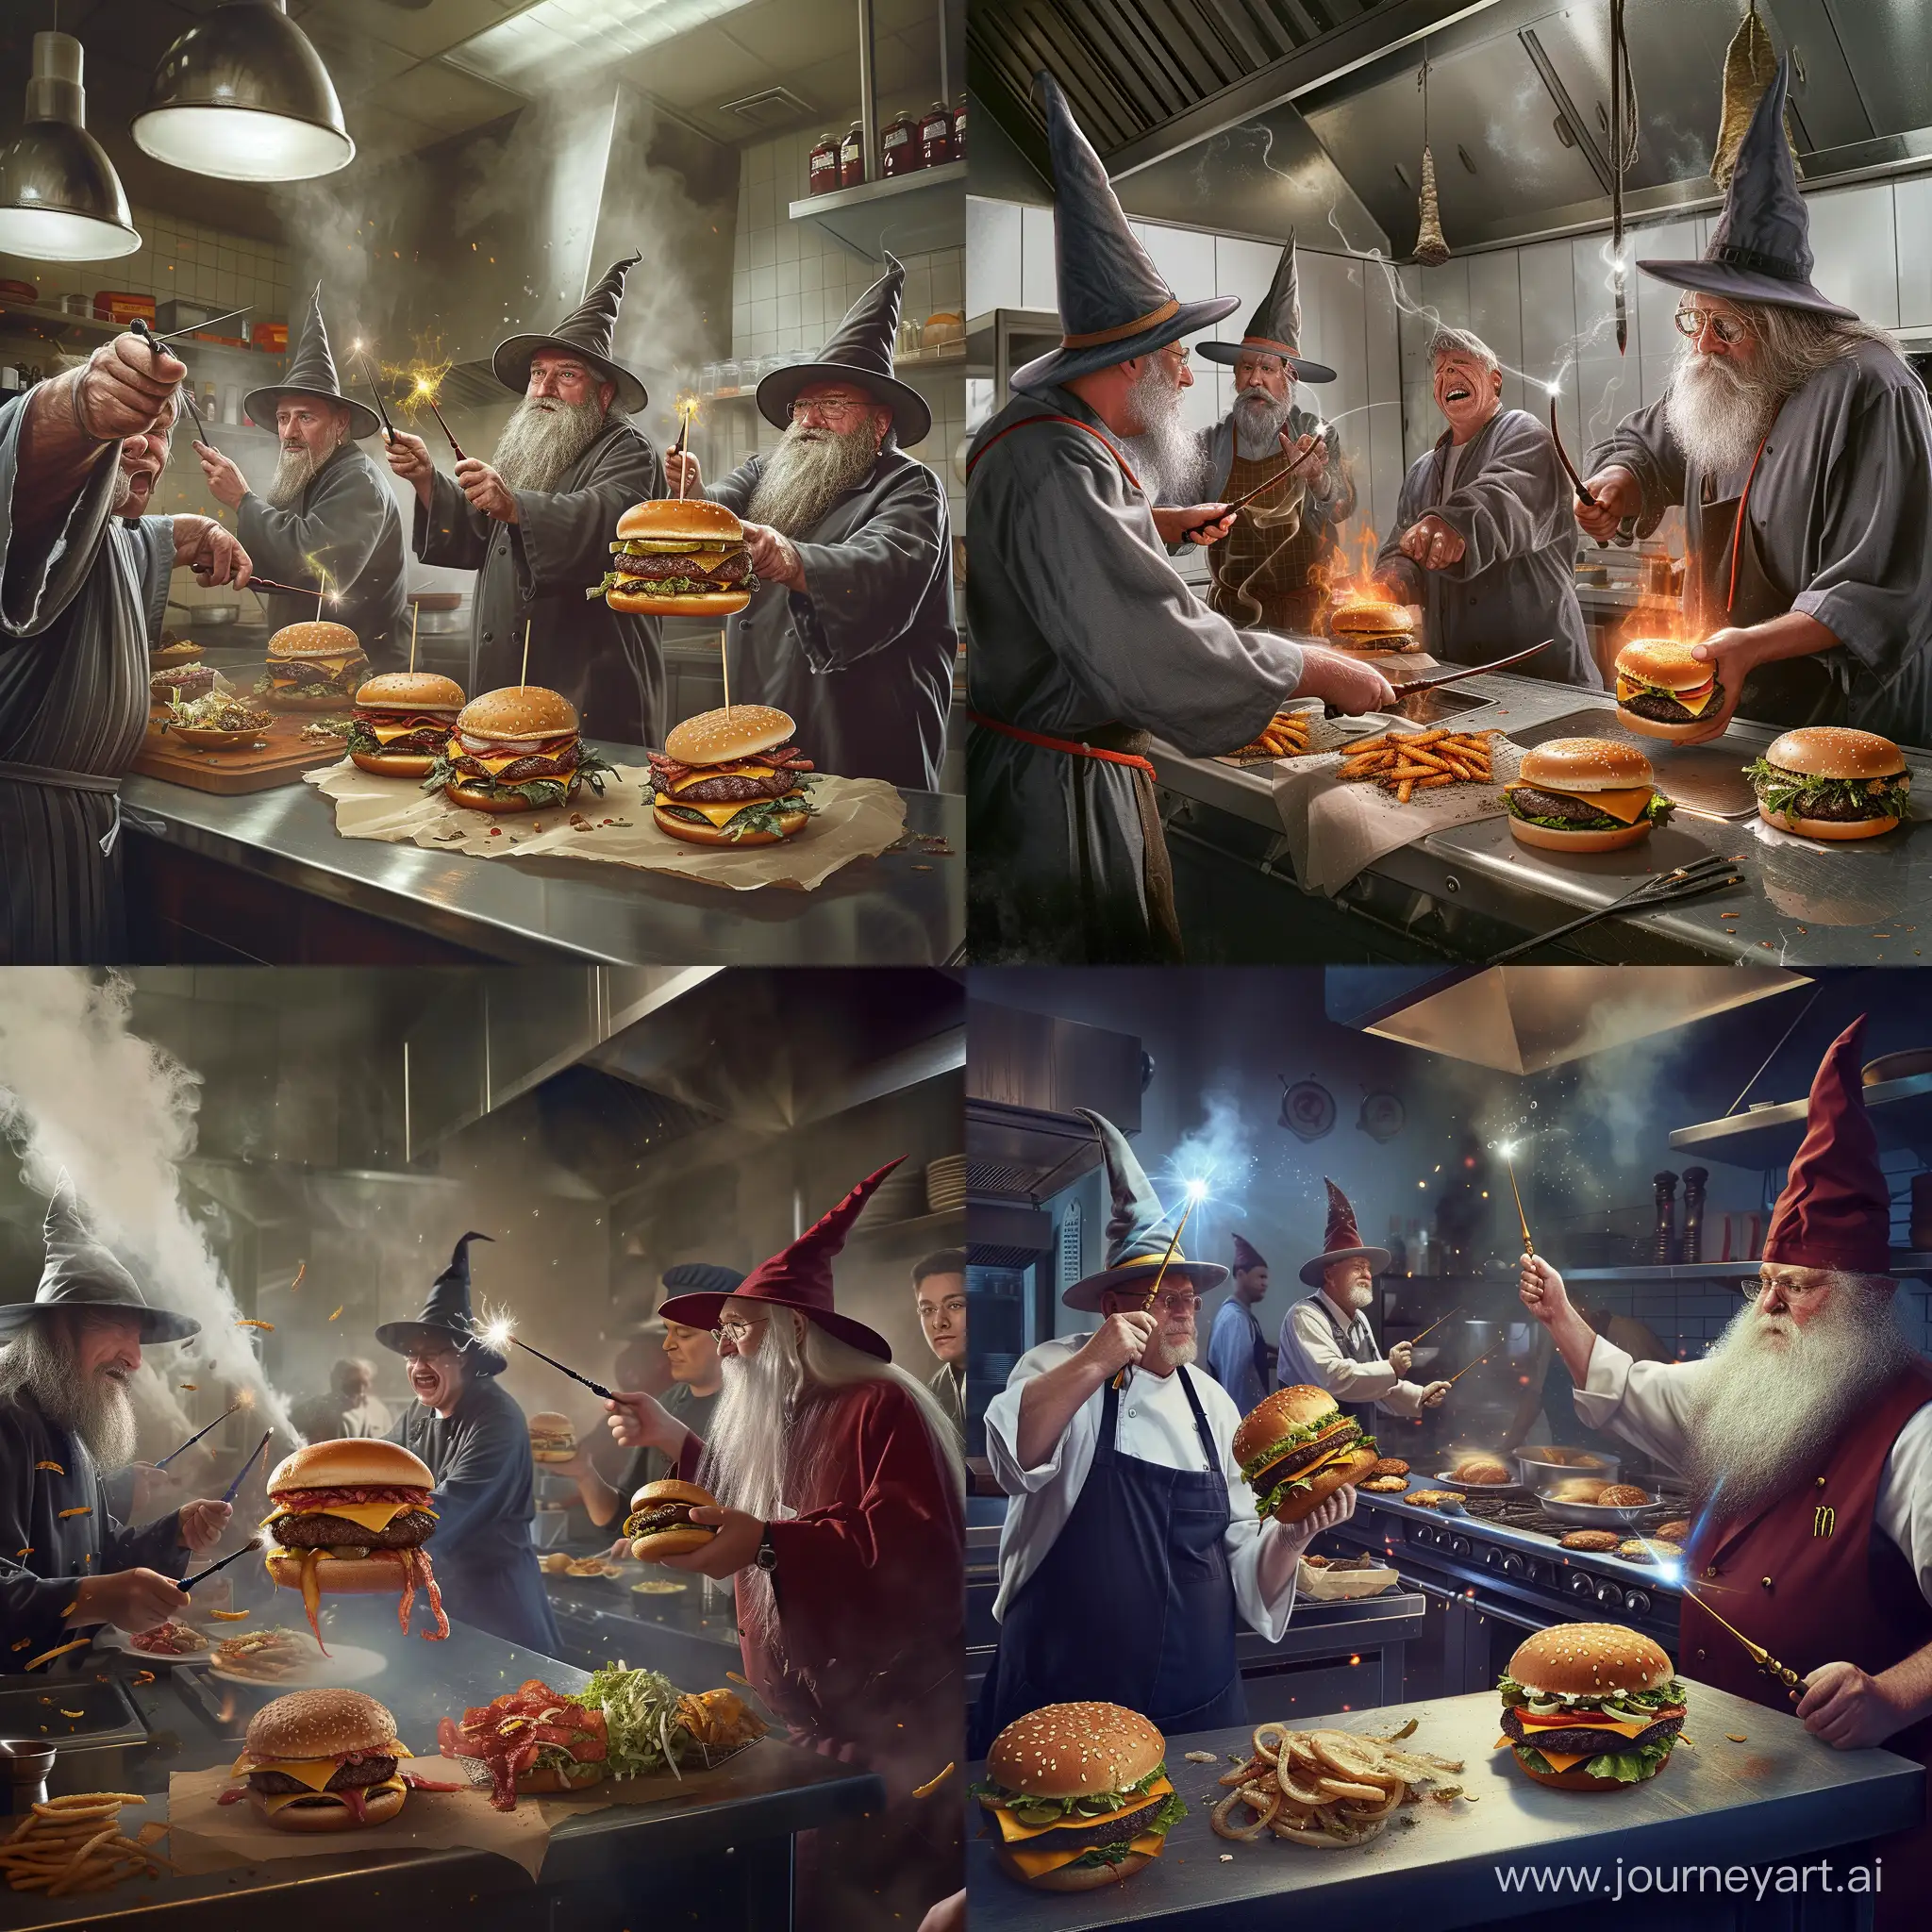 реалистичное изображение колдунов в фаст фуде на кухне с посохами и заклинаниями которые мешают поварам готовить бургеры